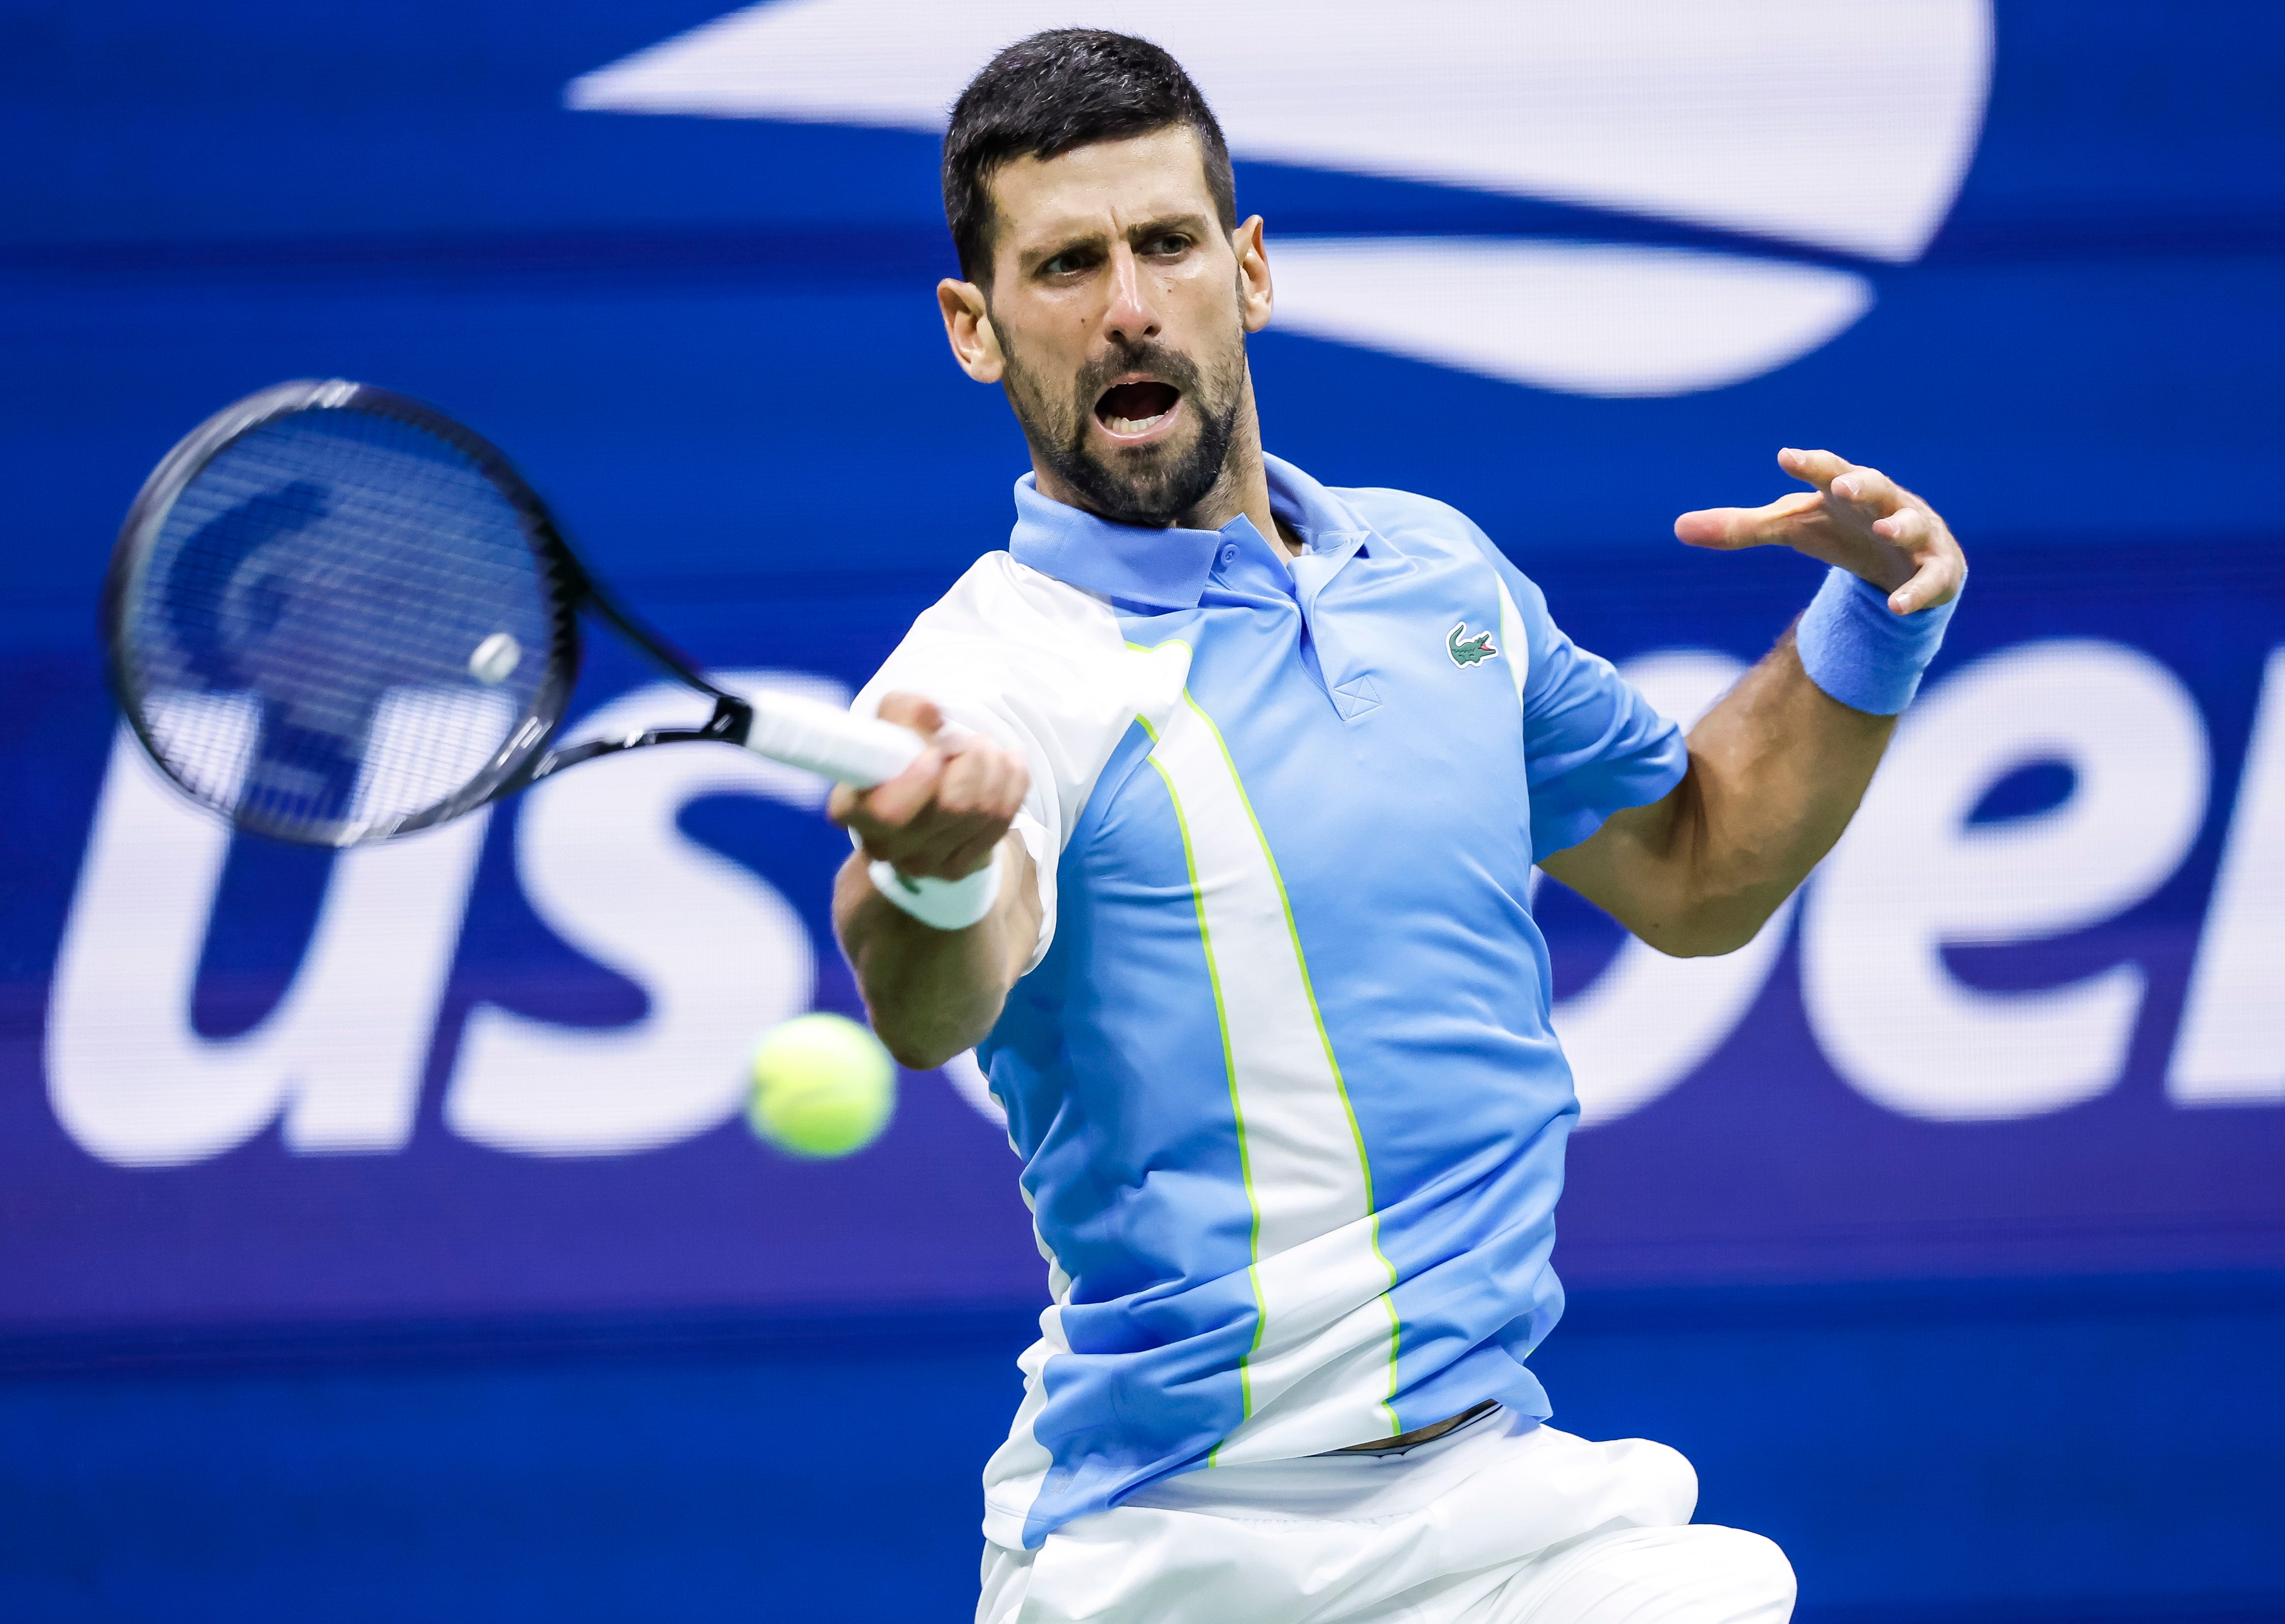 Novak Djokovic takes on Daniil Medvedev in the US Open men's final